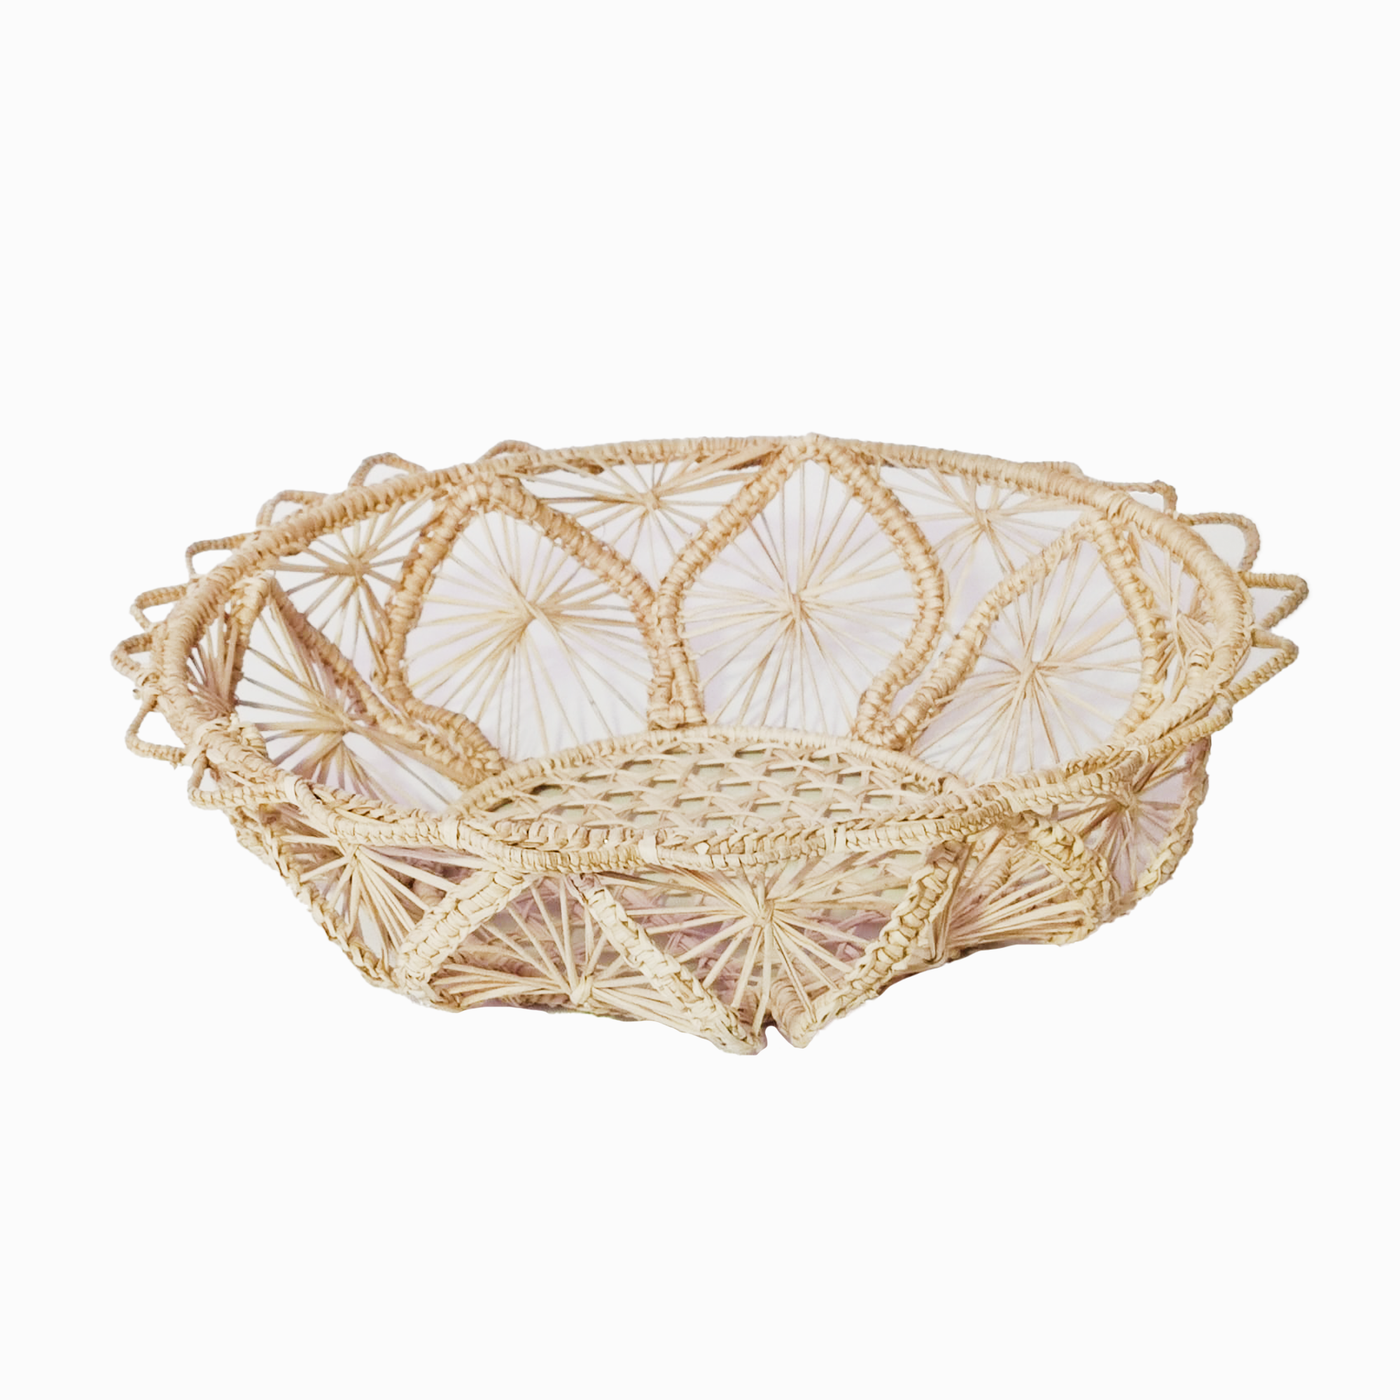 Spades Bread Basket